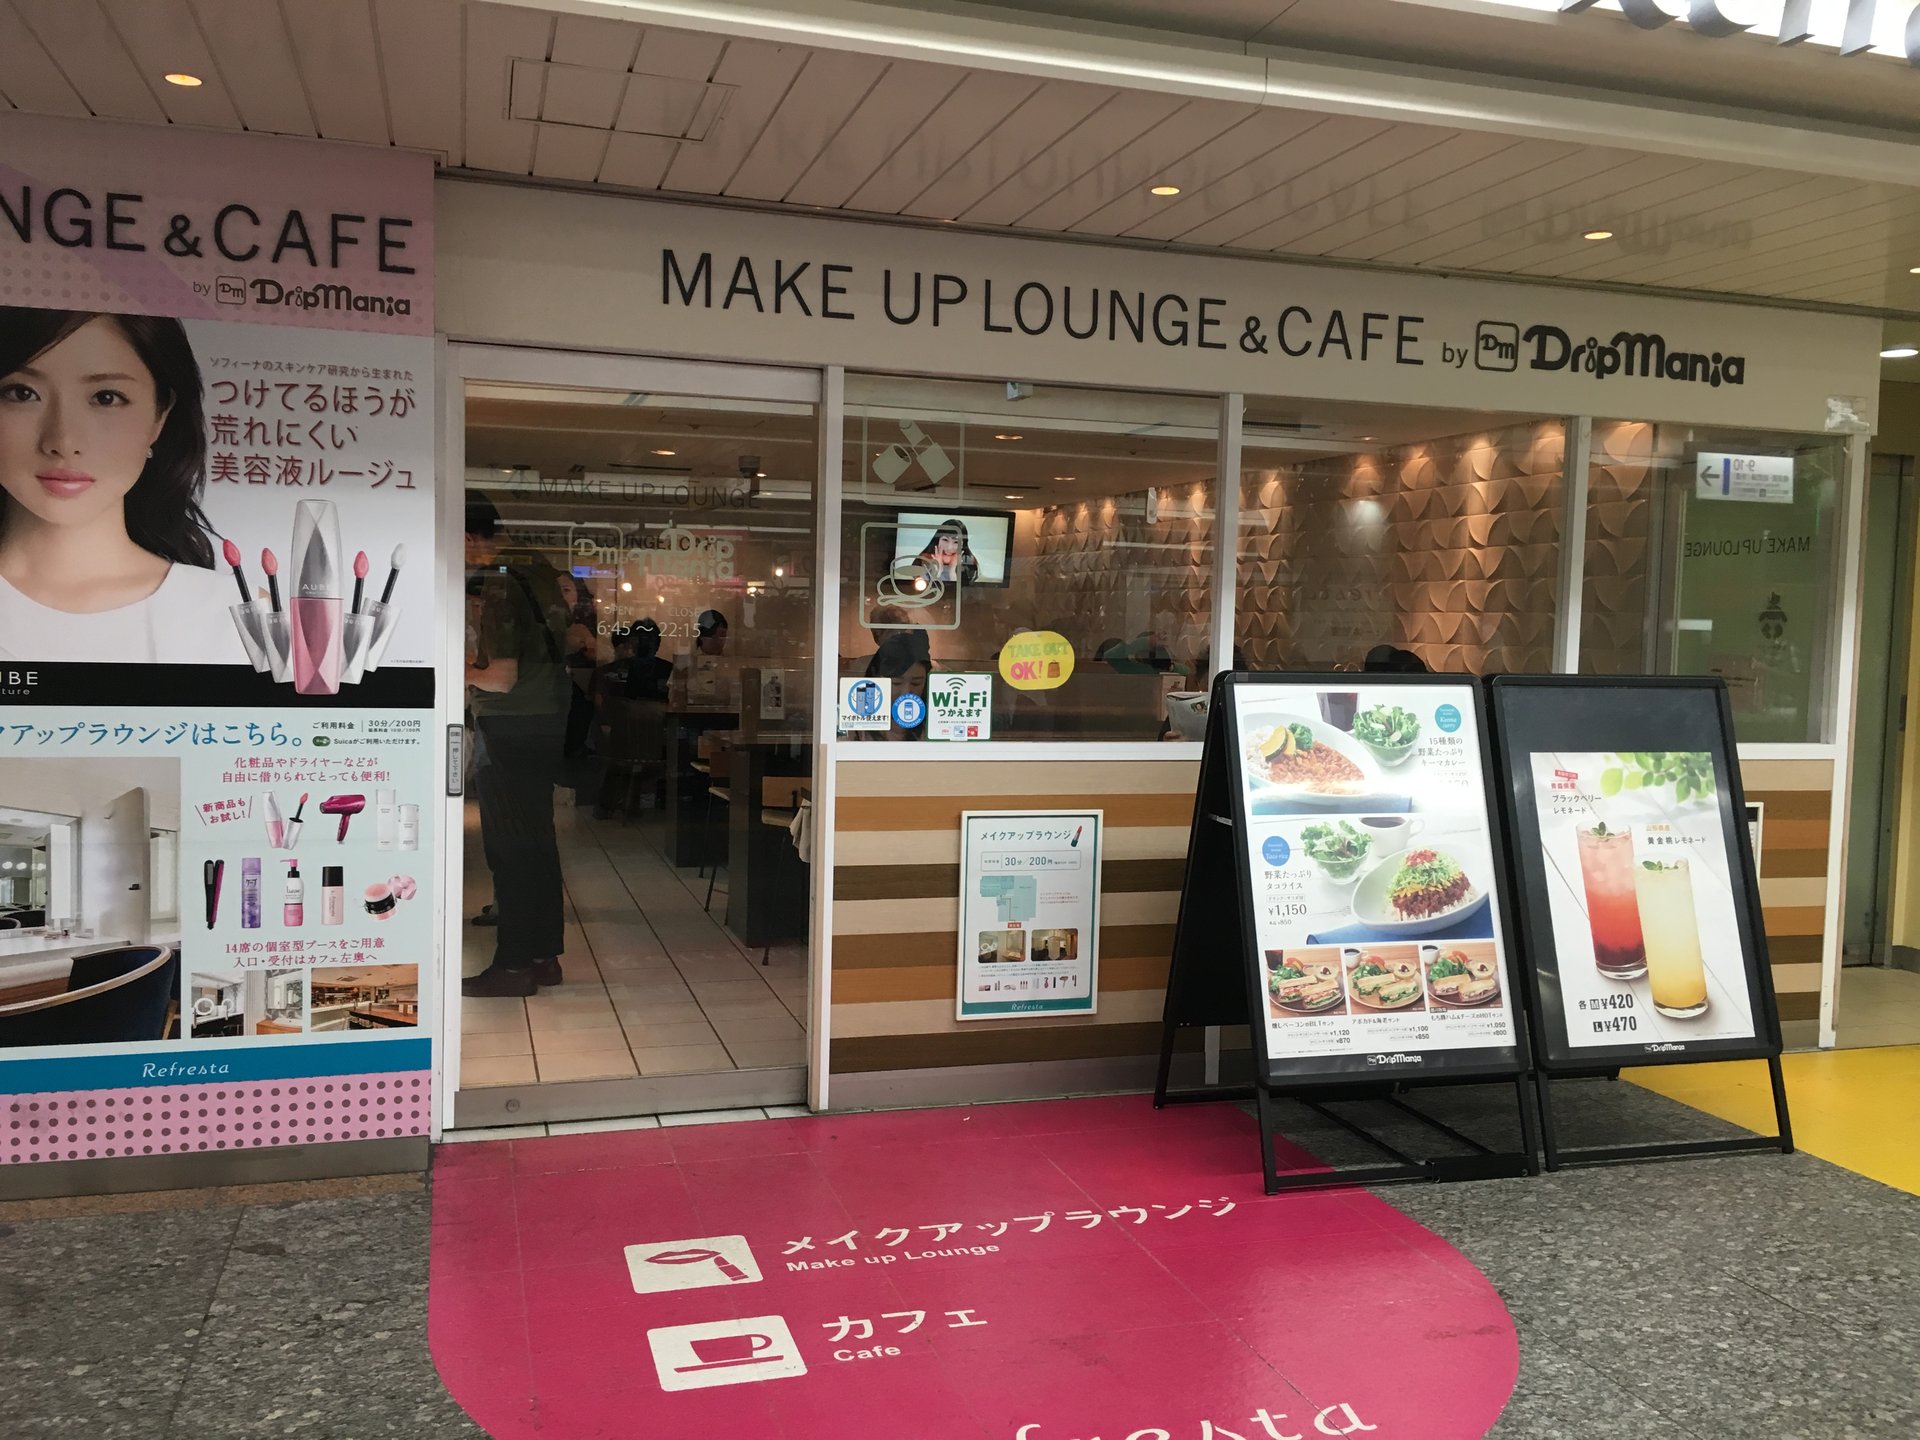 ドリップマニア 横浜リフレスタ店